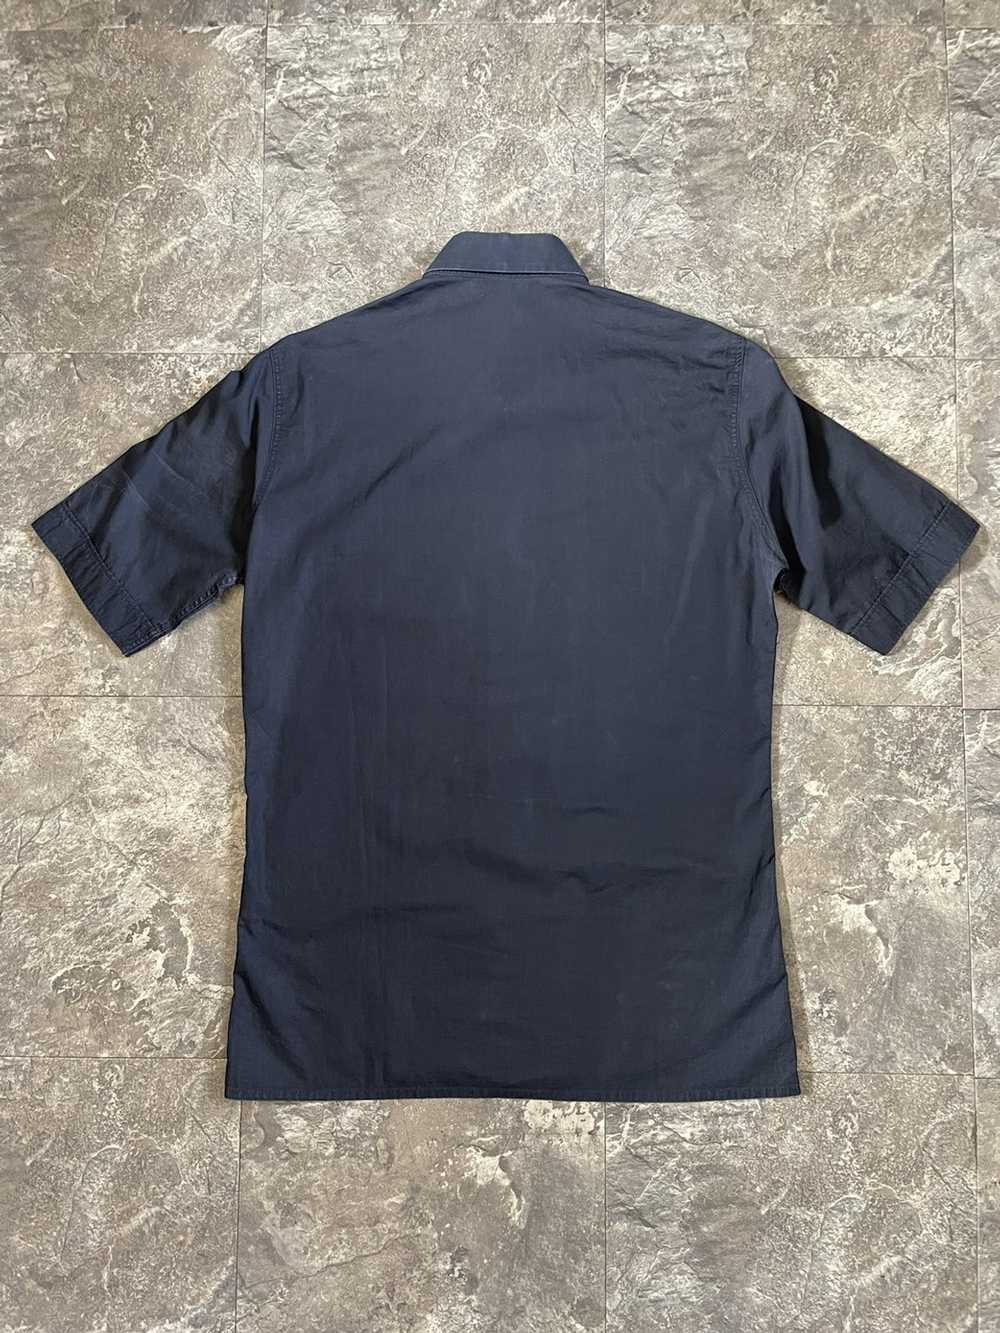 Raf Simons Raf Simons Consumed Button Up Shirt - image 3